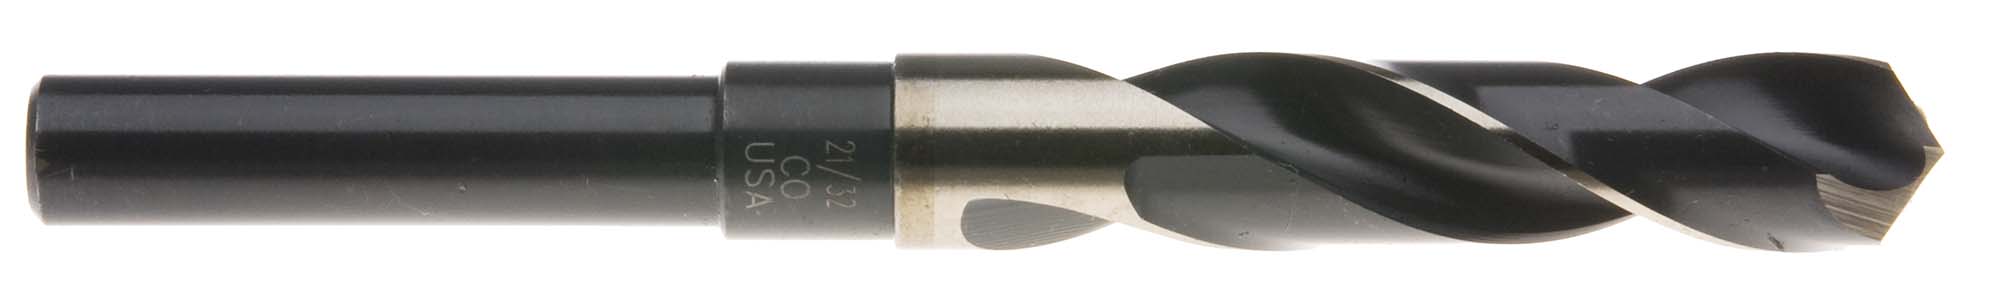 29/32" S and D Drill (1/2" shank) USA Cobalt